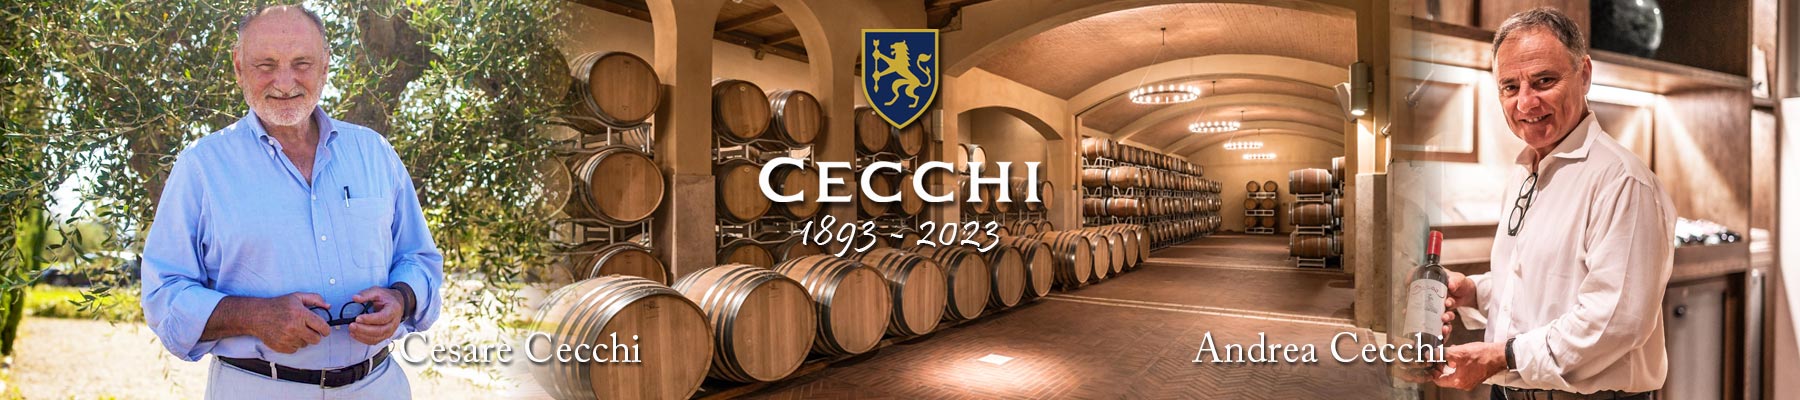 Cecchi-130-Years-Bottom-Banner-01